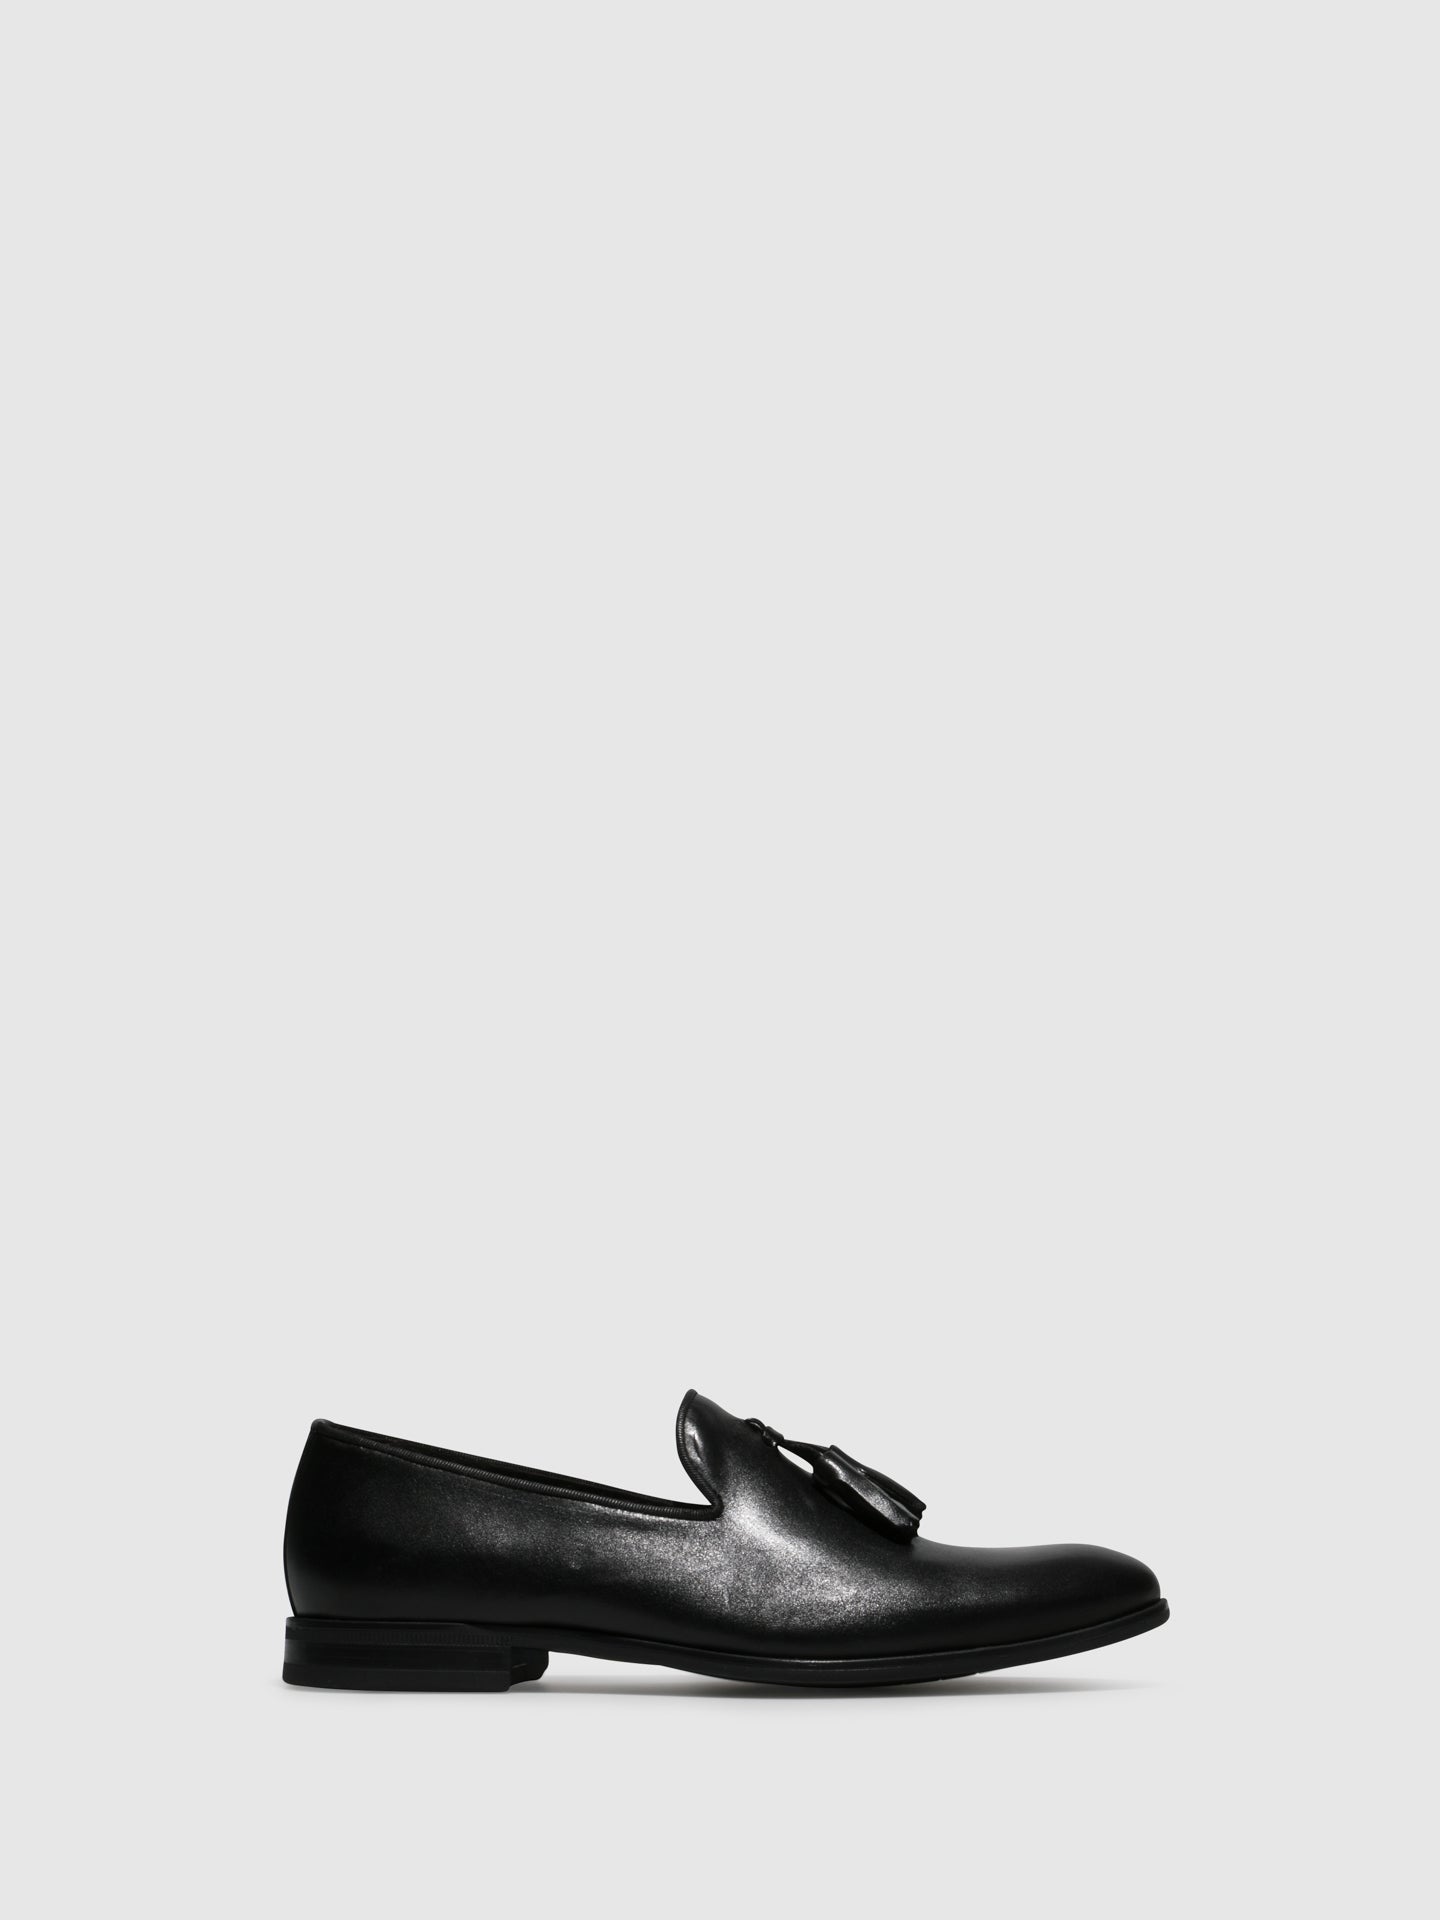 Foreva Black Slip-on Shoes